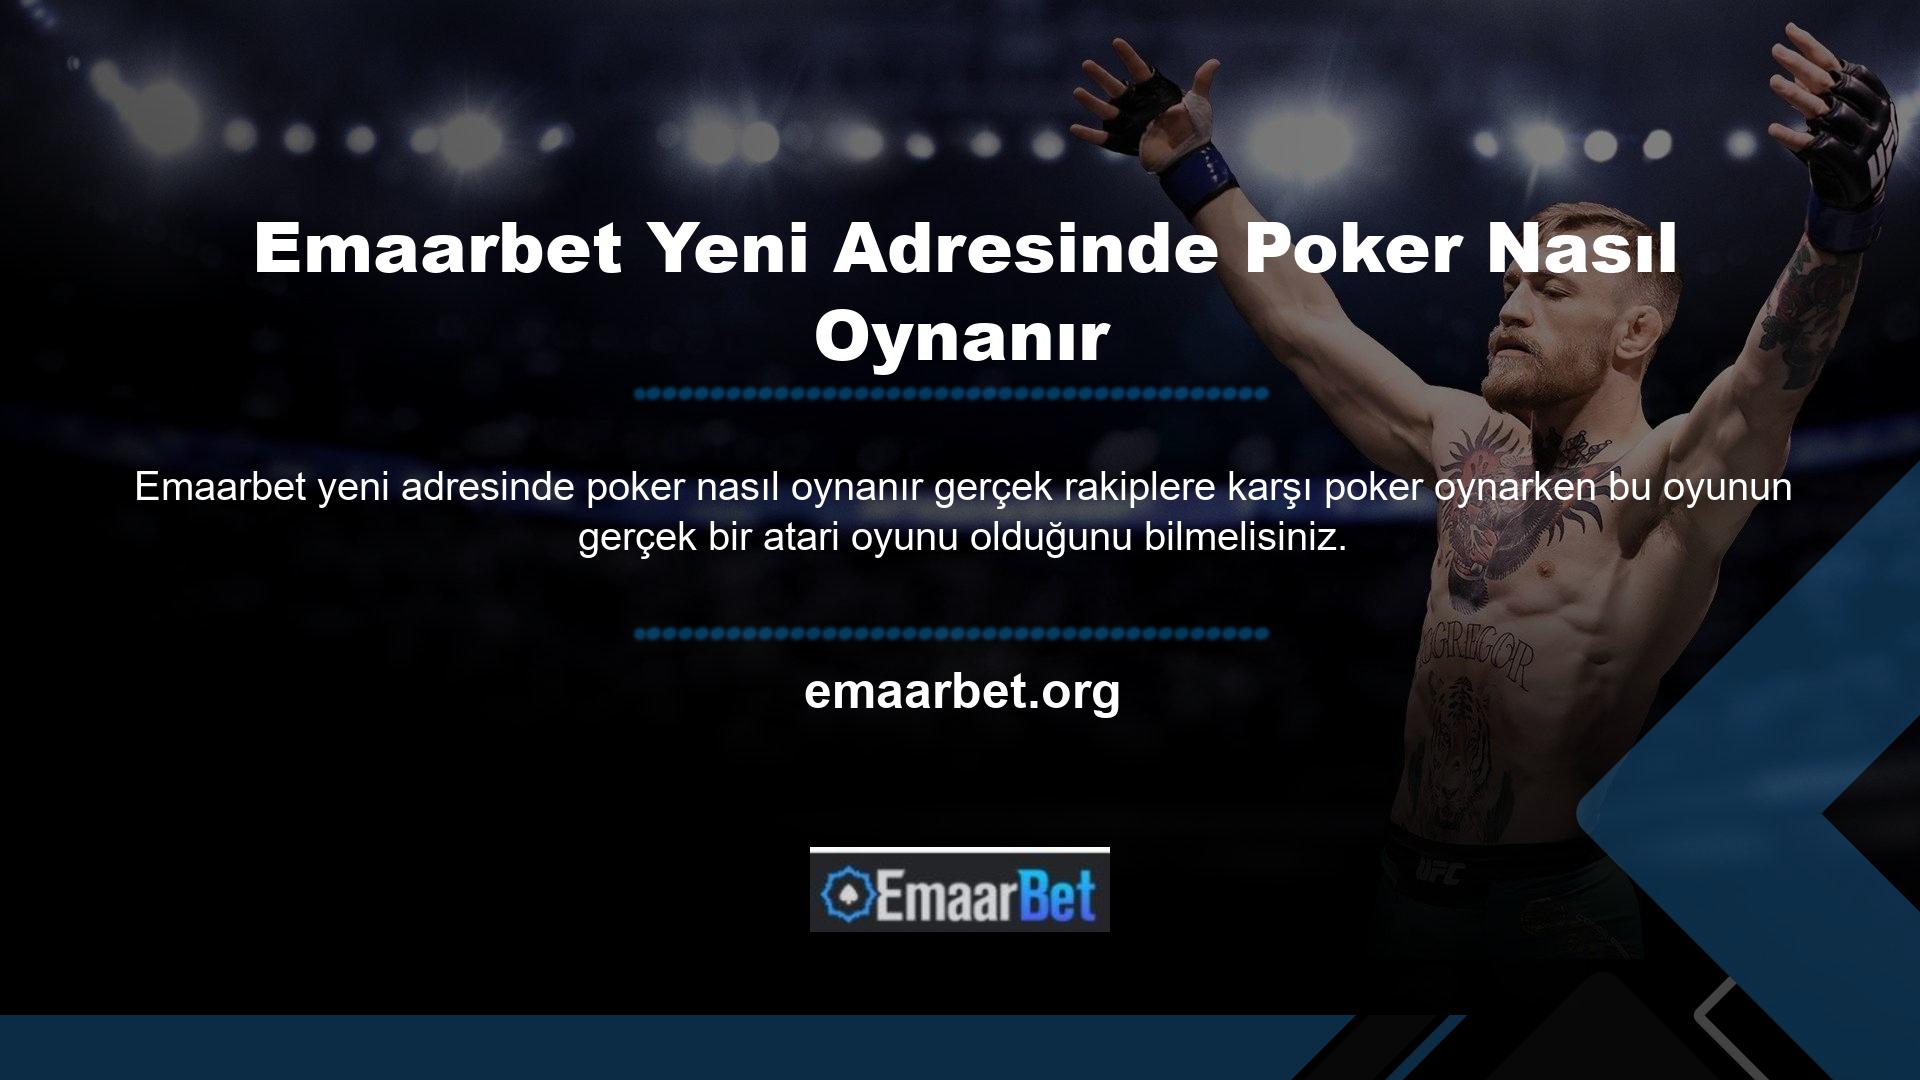 Emaarbet, gerçek oyunları destekleyen gelişmiş oyun sağlayıcılara sahip bir oyun destek kuruluşudur